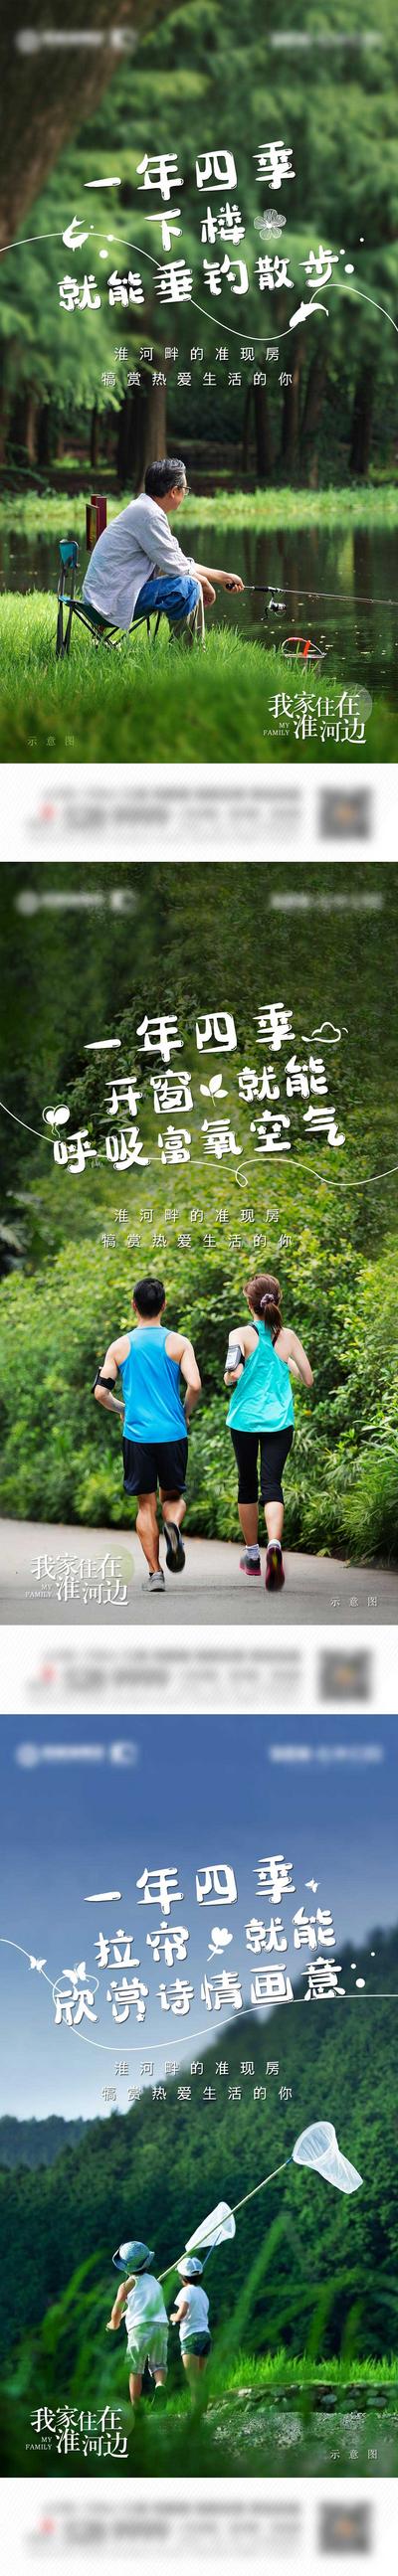 南门网 海报 房地产 河景 河边 钓鱼 一年四季 跑步 孩子 鲜氧 公园 生态 价值点 系列